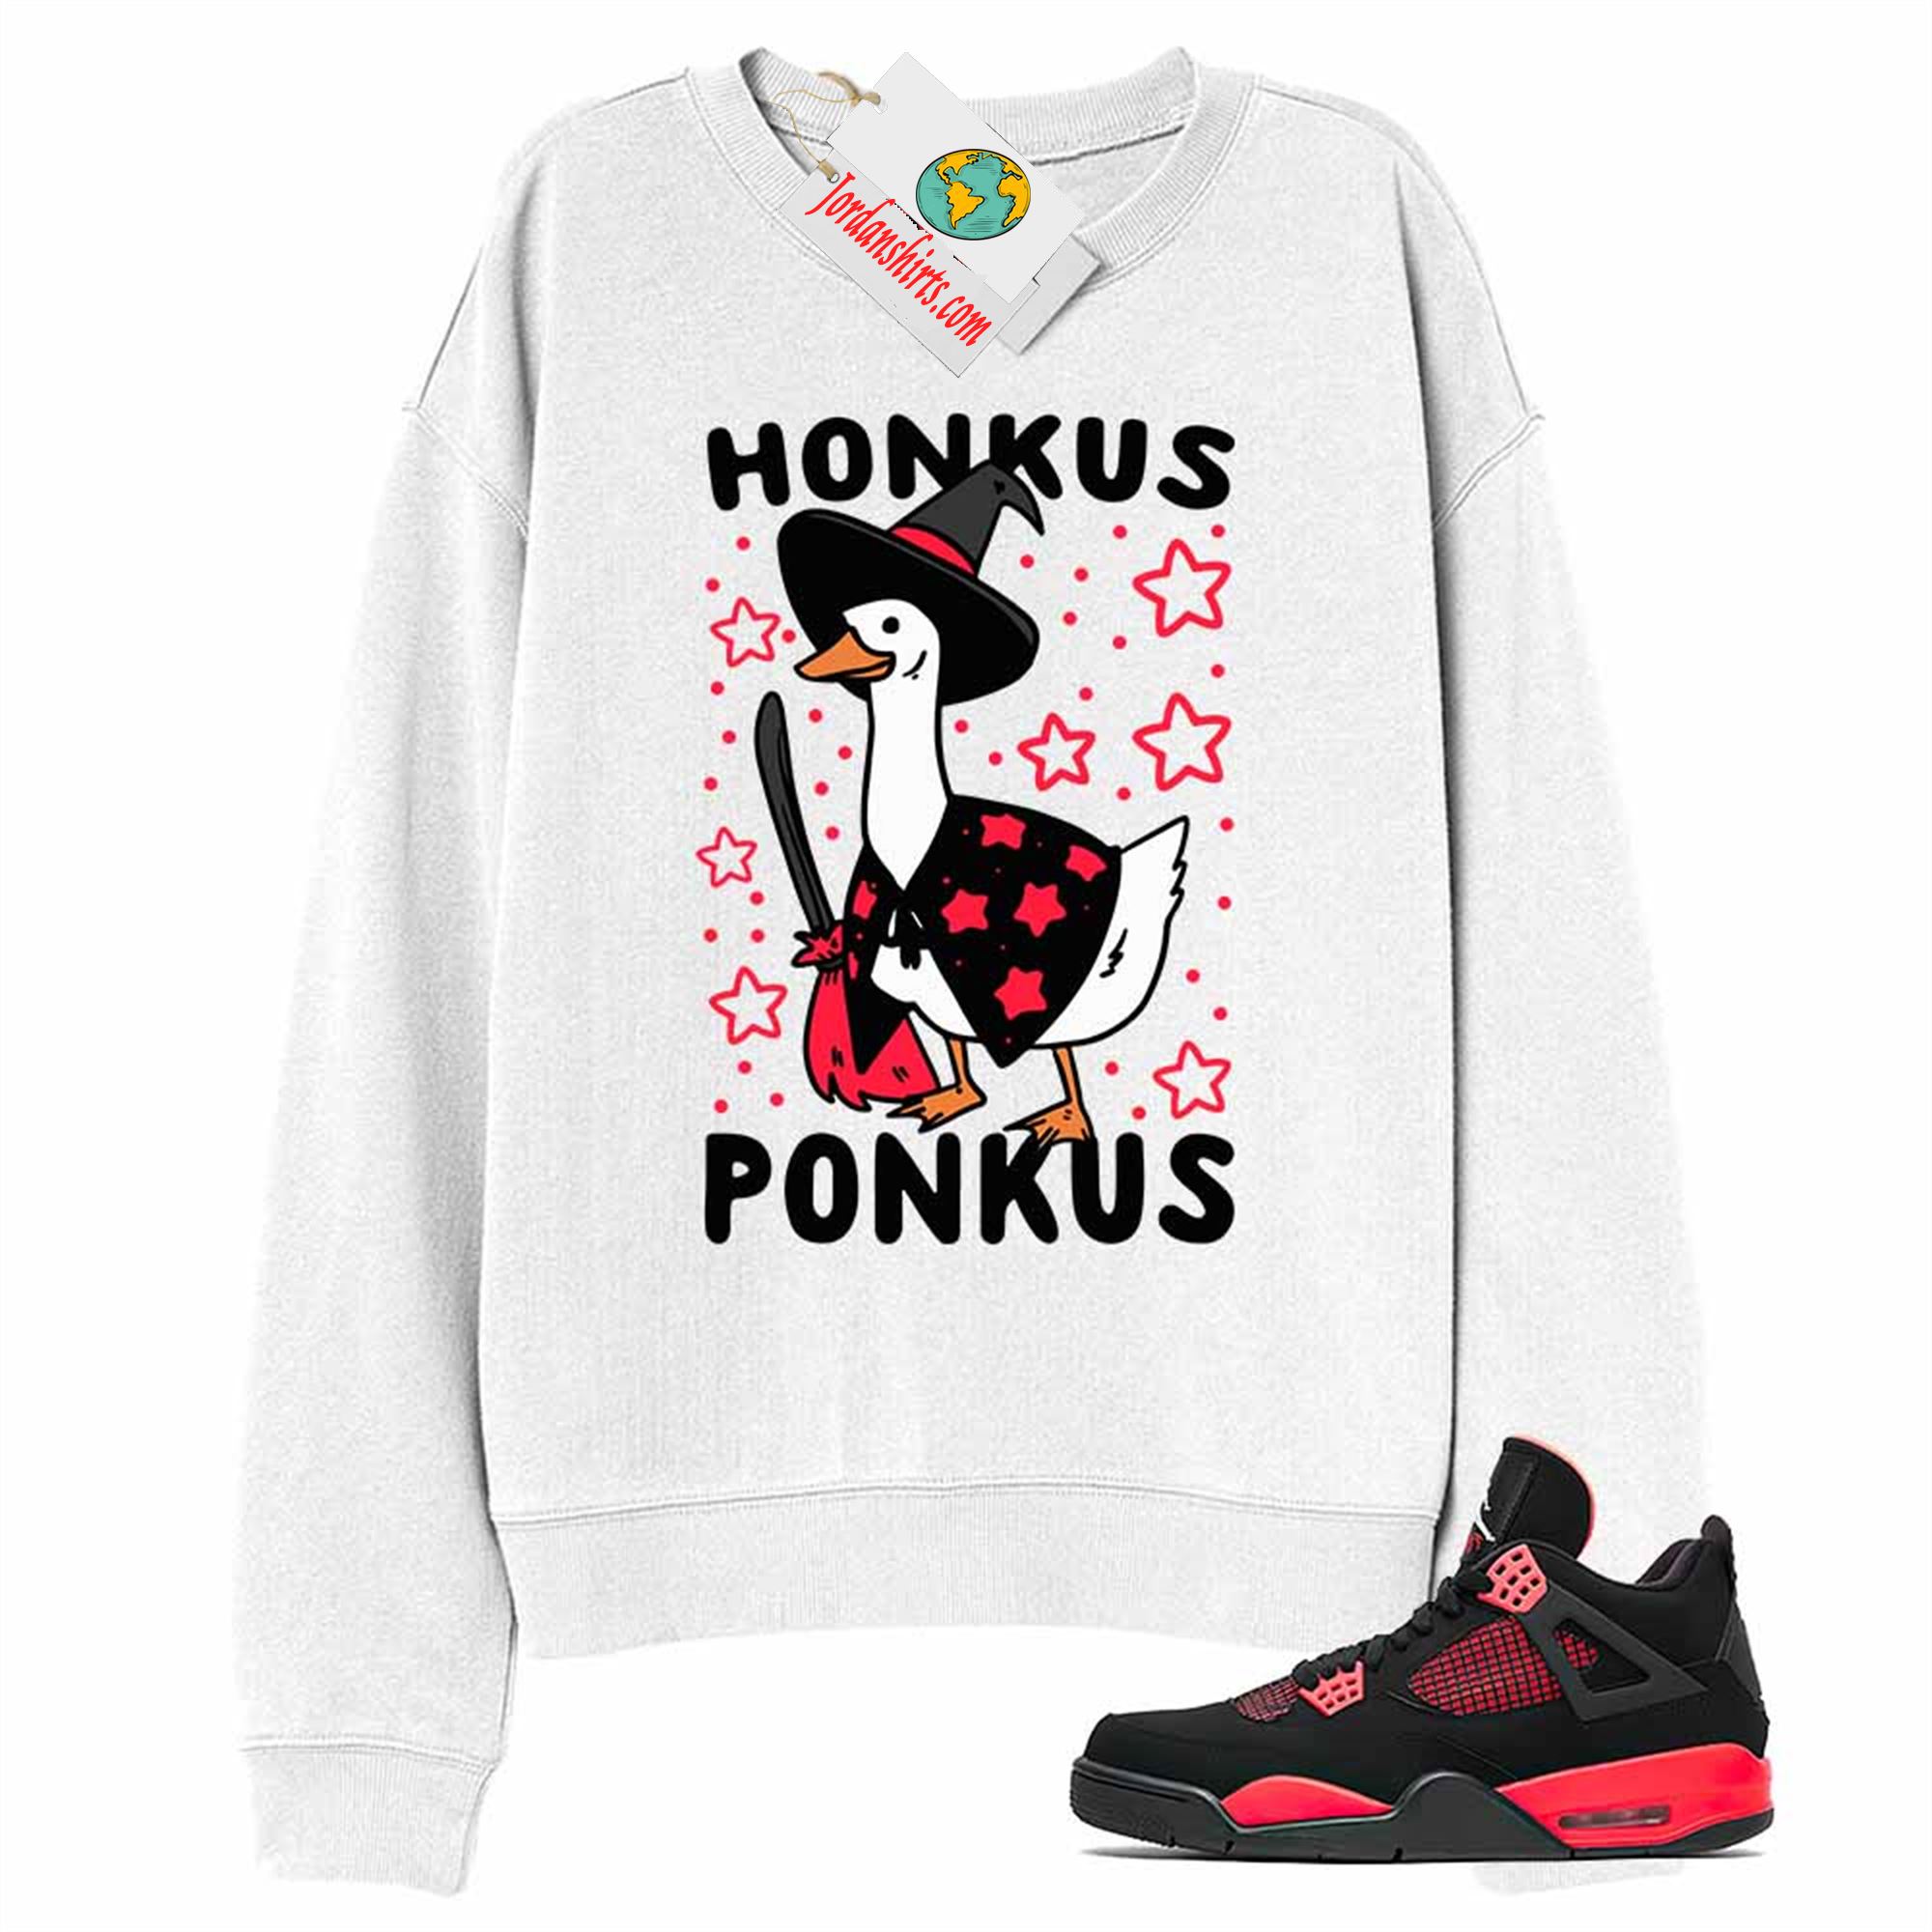 Jordan 4 Sweatshirt, Witches Duck Honkus Ponkus White Sweatshirt Air Jordan 4 Red Thunder 4s Full Size Up To 5xl